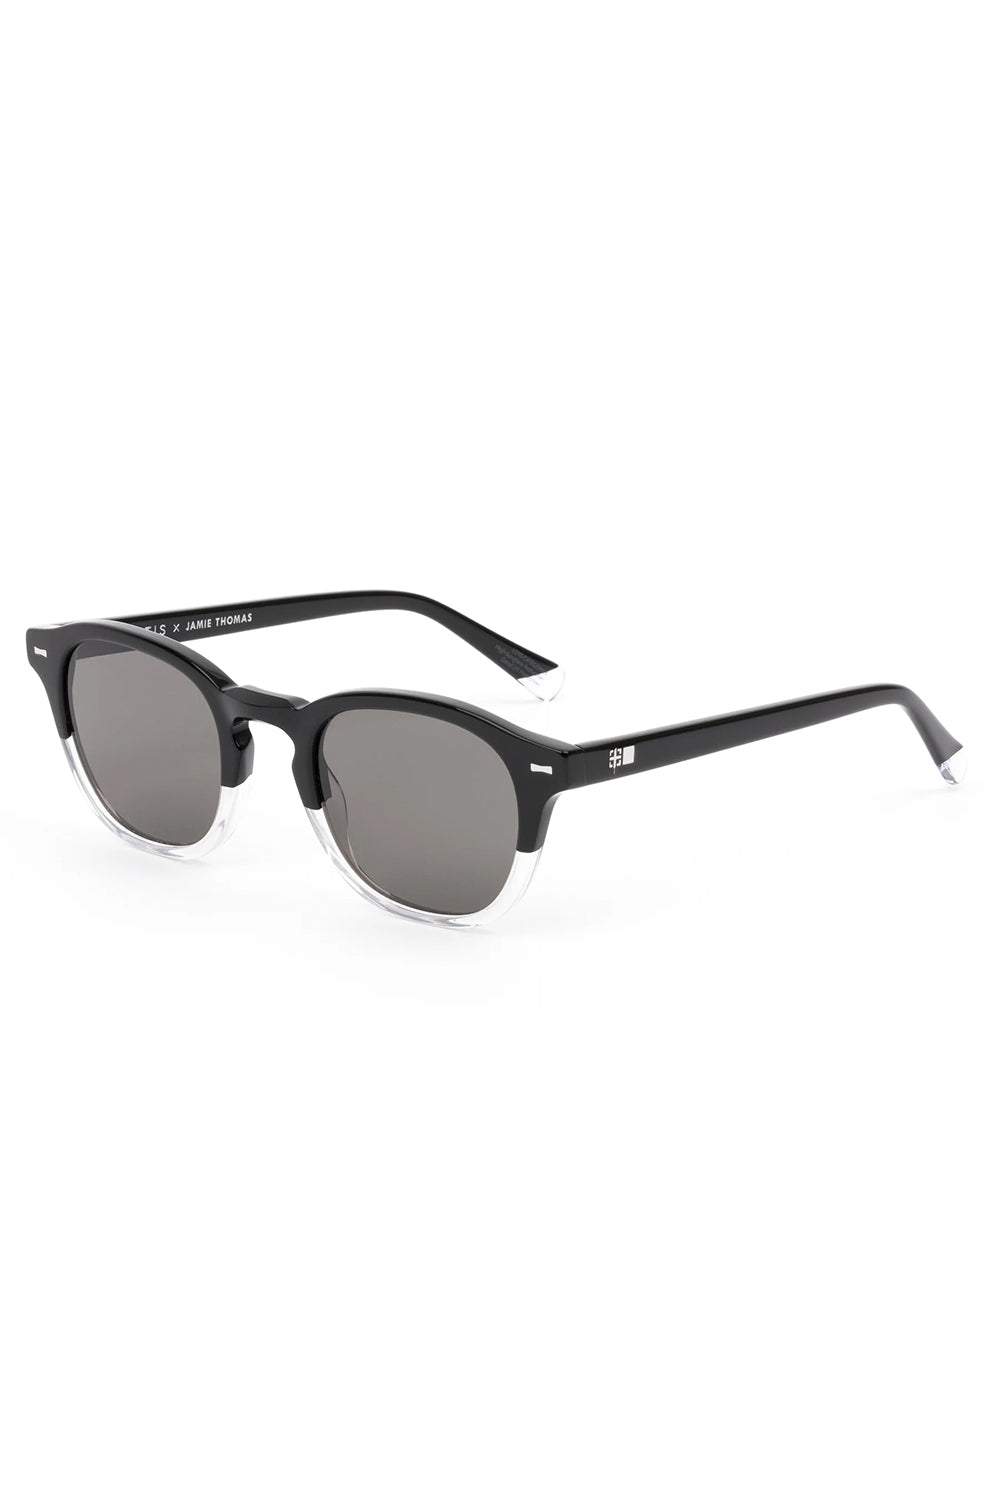 OTIS Outsider Vintage Sunglasses